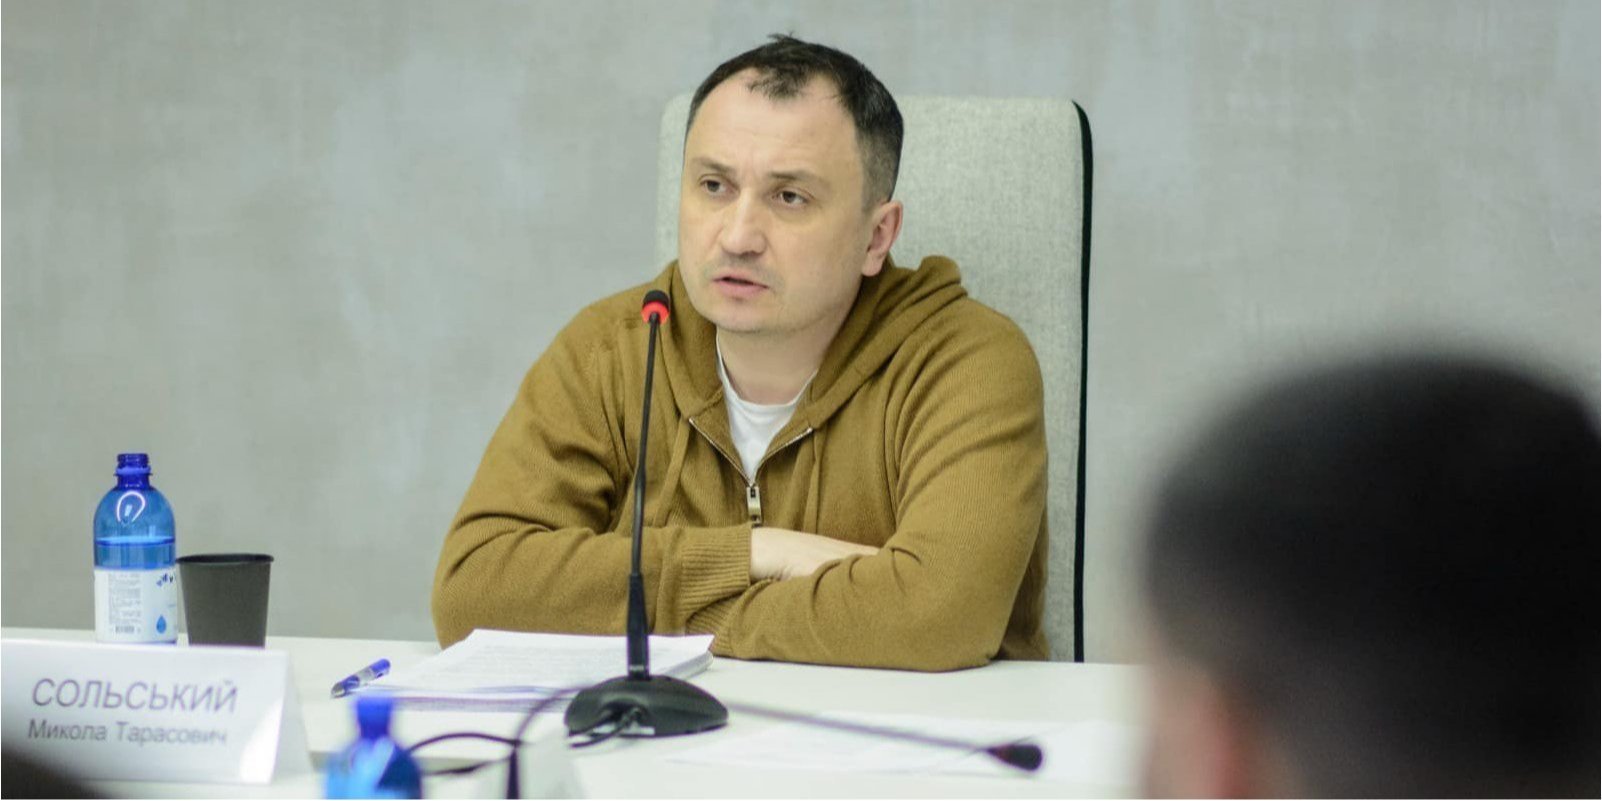 Міністр аграрної політики Сольський подав у відставку